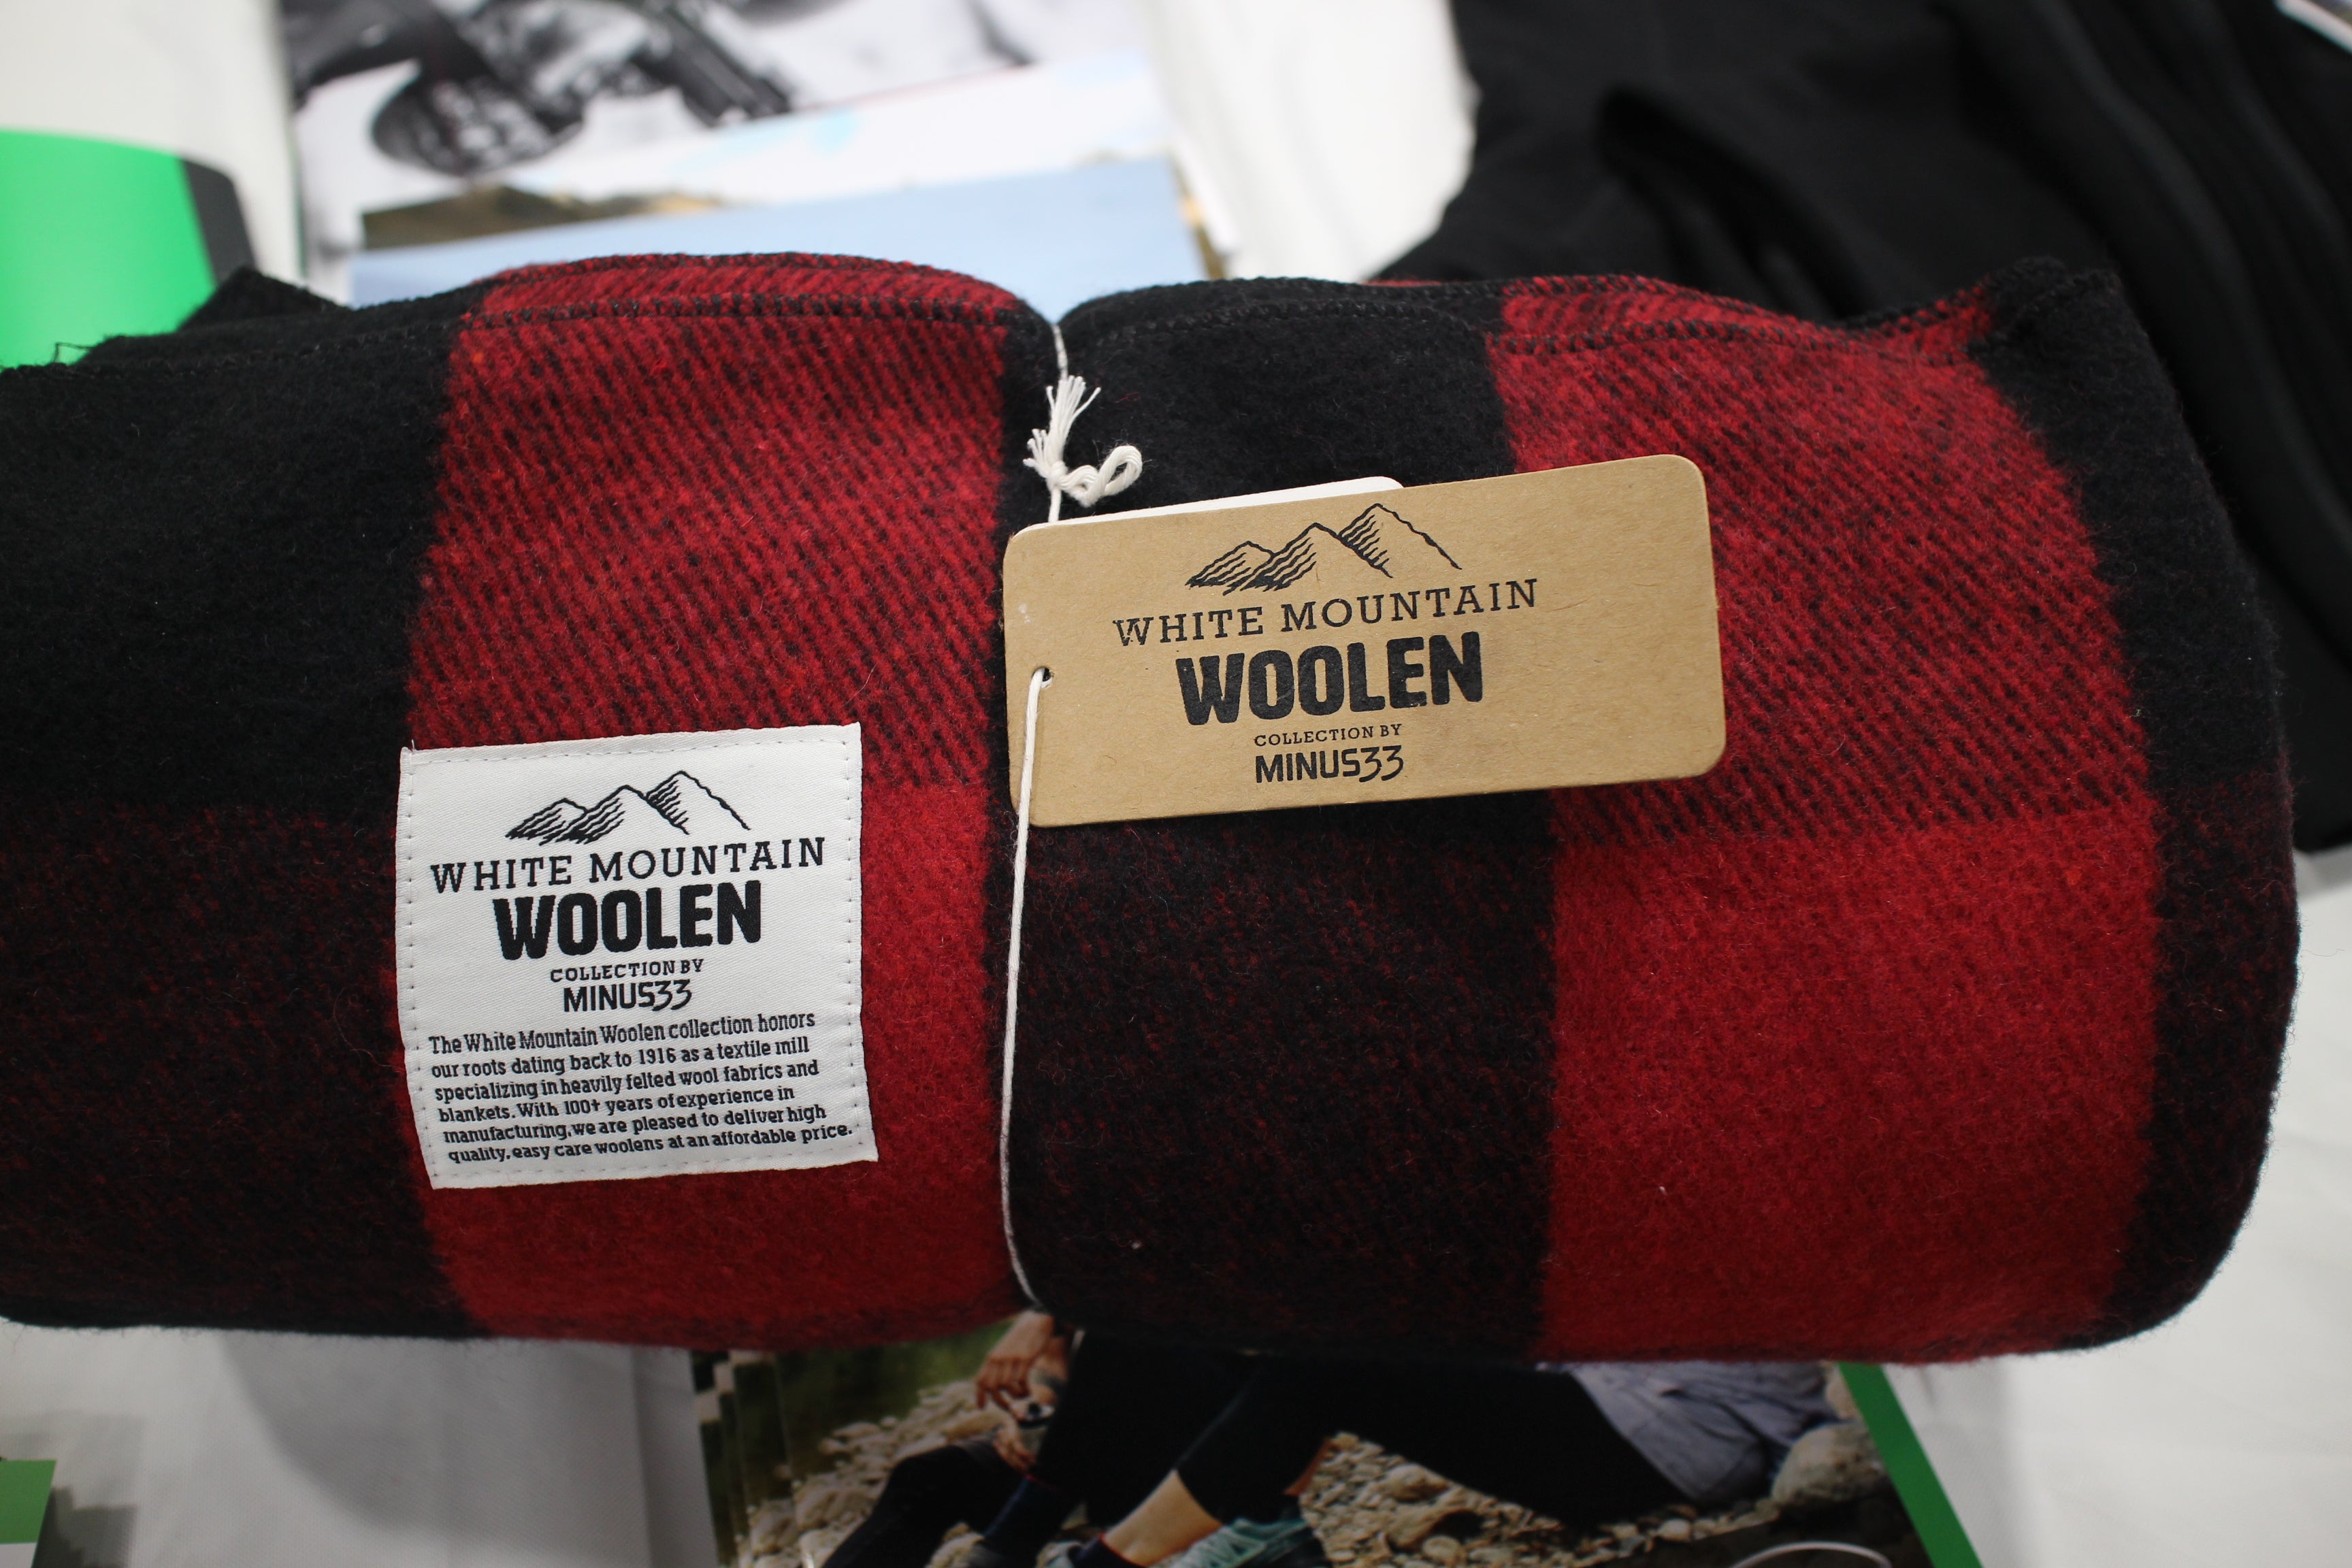 Minus33 merino Wool blanket